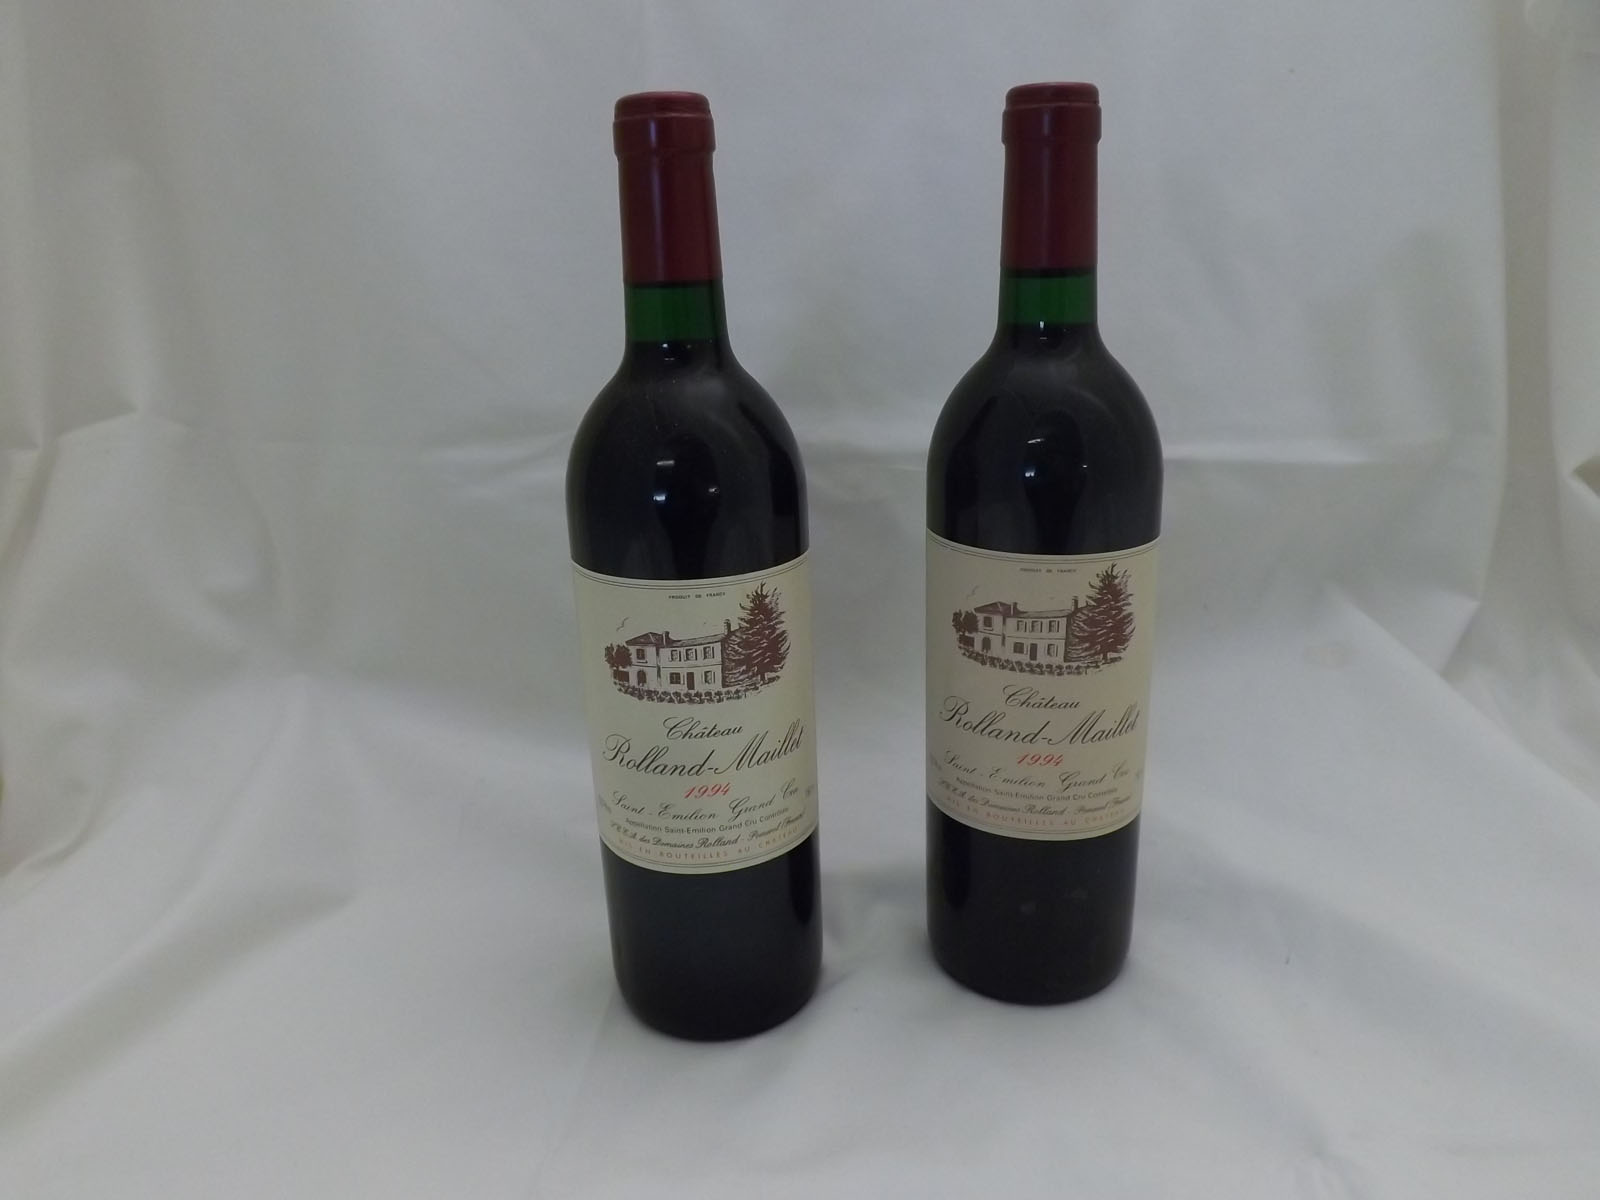 Twelve bottles of Chateau Rolland-Maillet, 1994 St Emilion Grand Cru